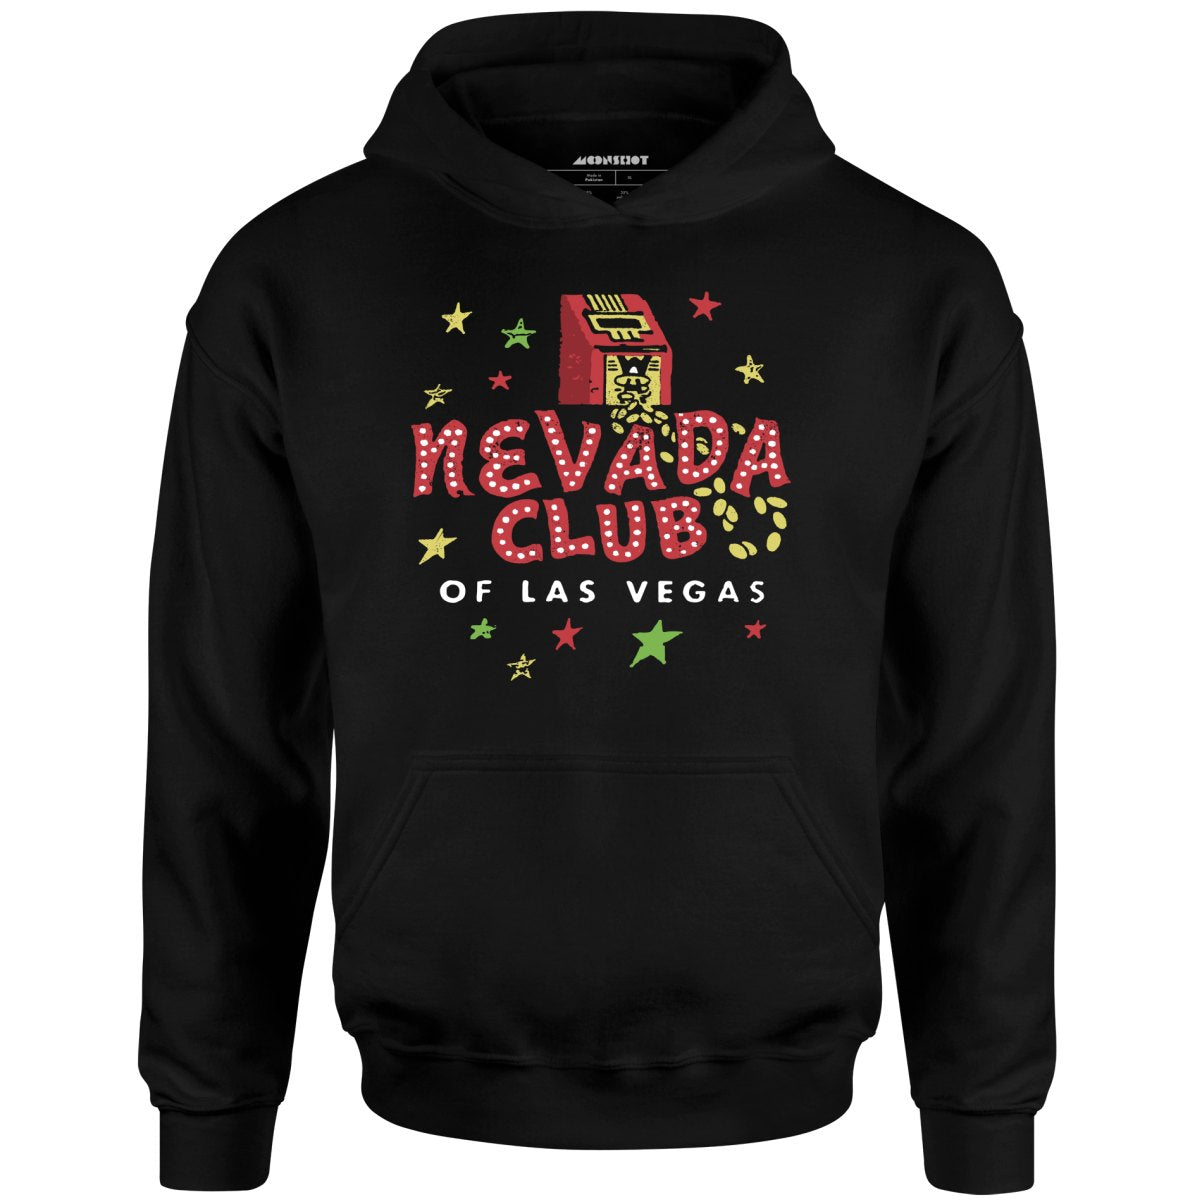 Nevada Club - Vintage Las Vegas - Unisex Hoodie